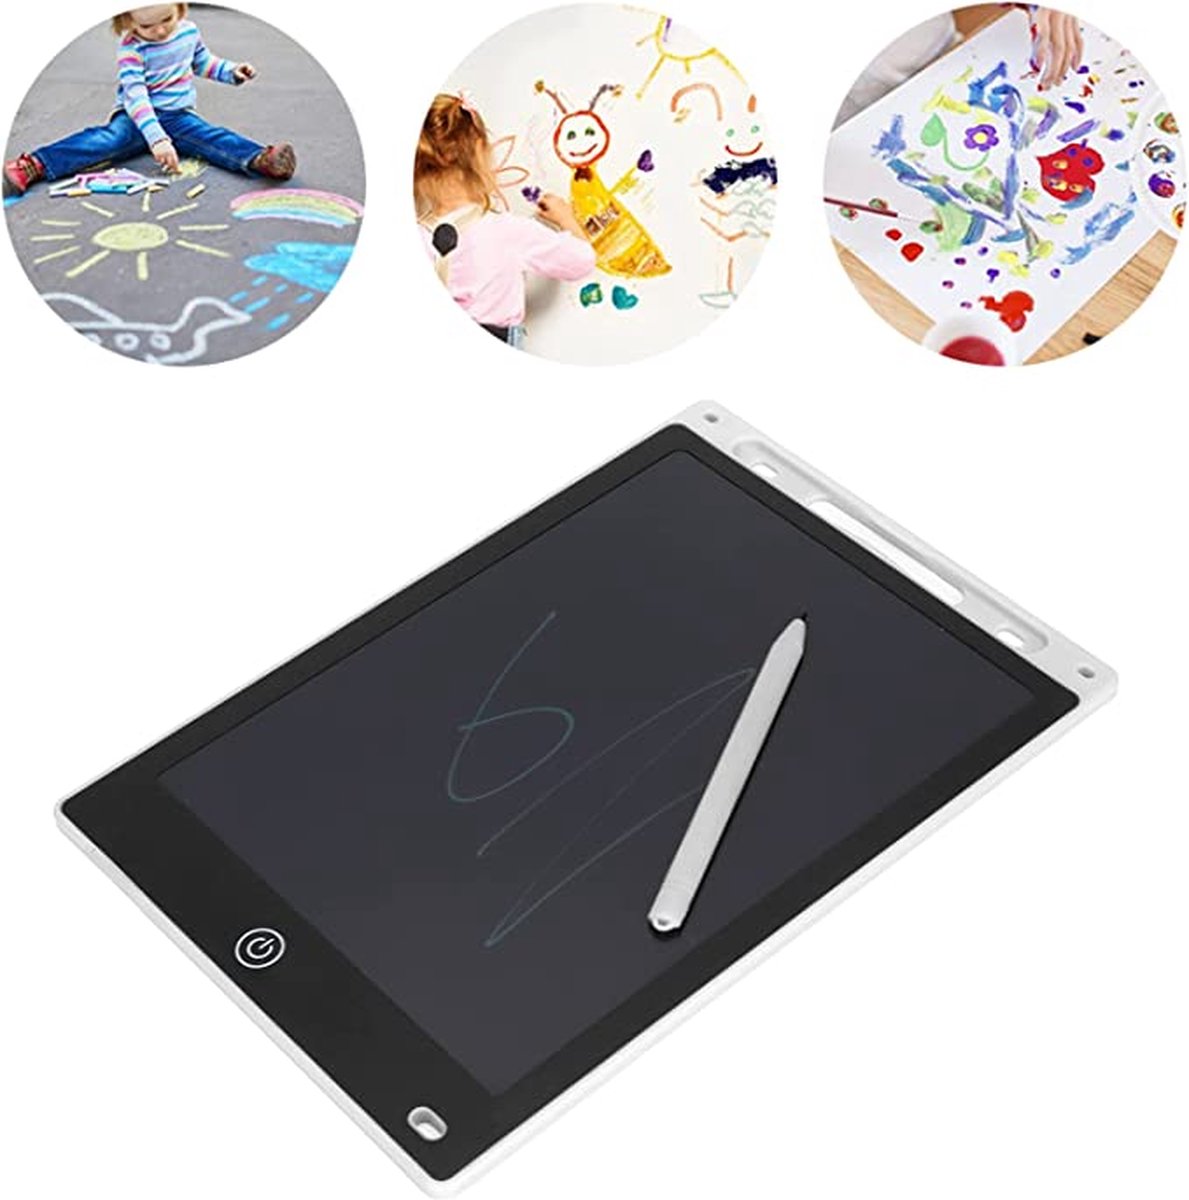 LCD Tekentablet Kinderen- "Wit" 12 inch(Dunner frame, vloeiender schrijven) -ultradun en draagbaar- Kleurenscherm - lcd schrijfbord- Kids Tablet - Drawing Tablet - Kindertablet -educatief -creatief-speelgoed voor onderweg- Tekenpad - Drawing Pad